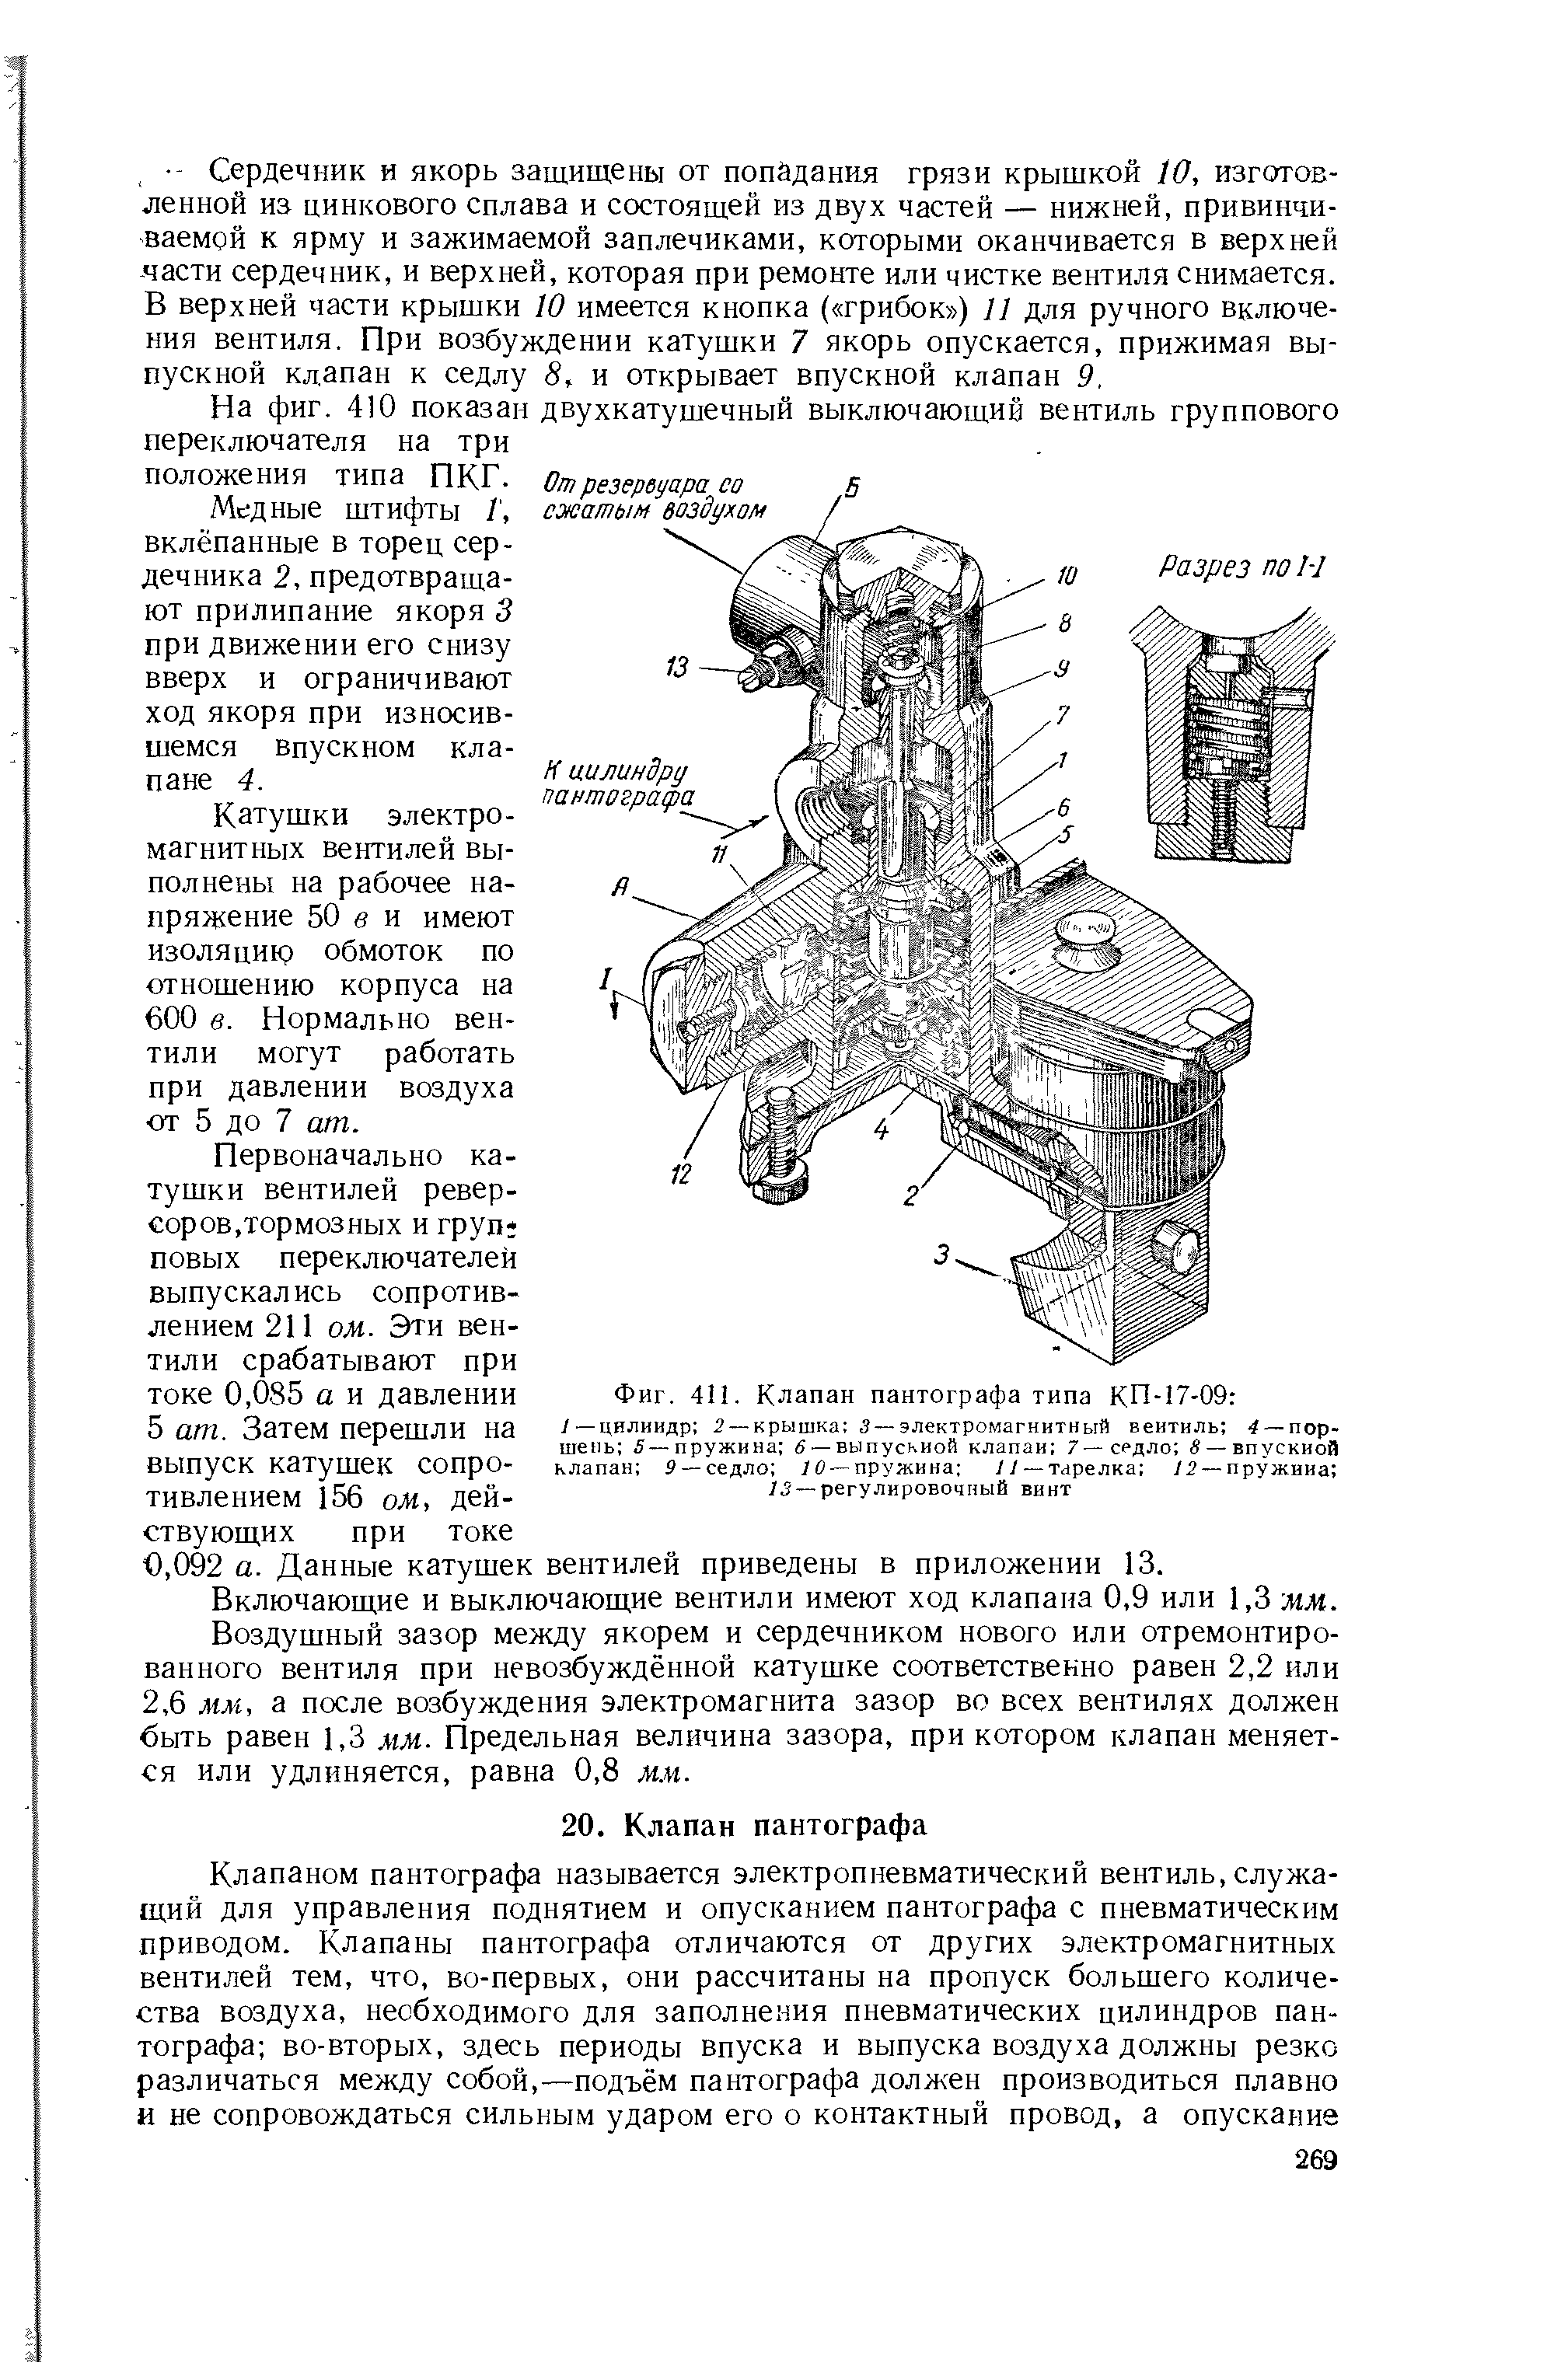 Фиг. 4 . Клапан пантографа типа КП-17-09 
